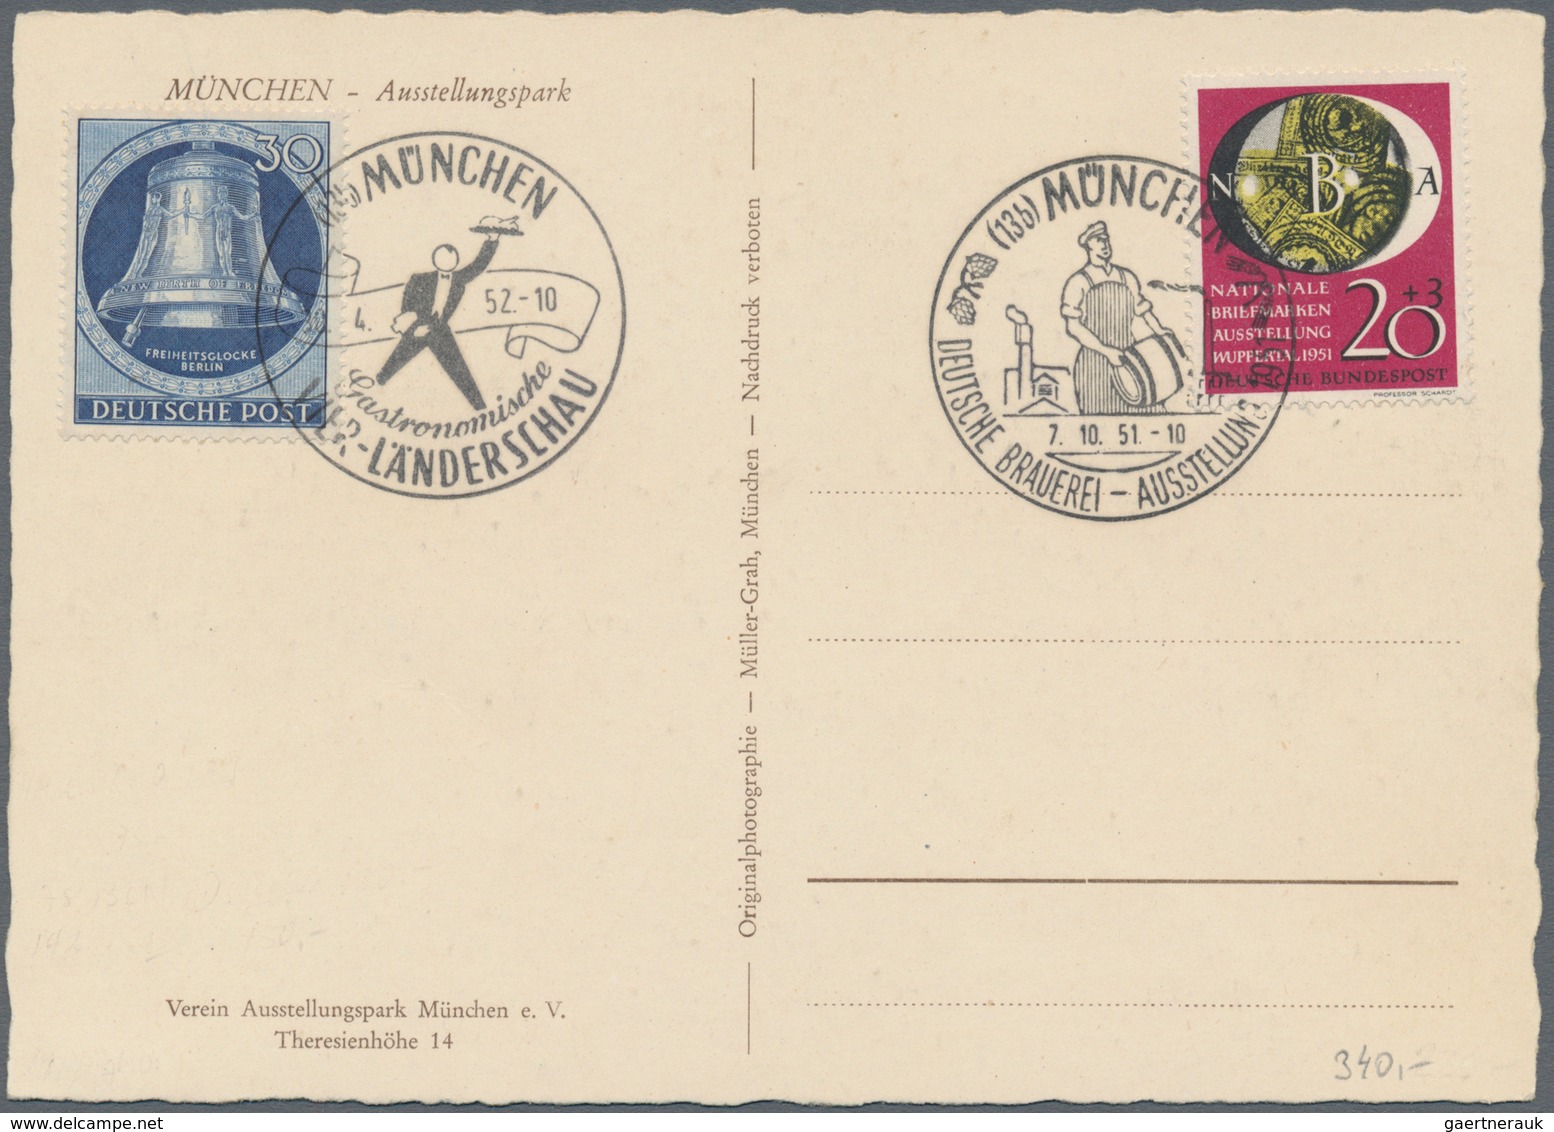 Bundesrepublik und Berlin: 1948/1964, vielseitige Partie von ca. 90 Briefen, Karten und Ganzsachen,